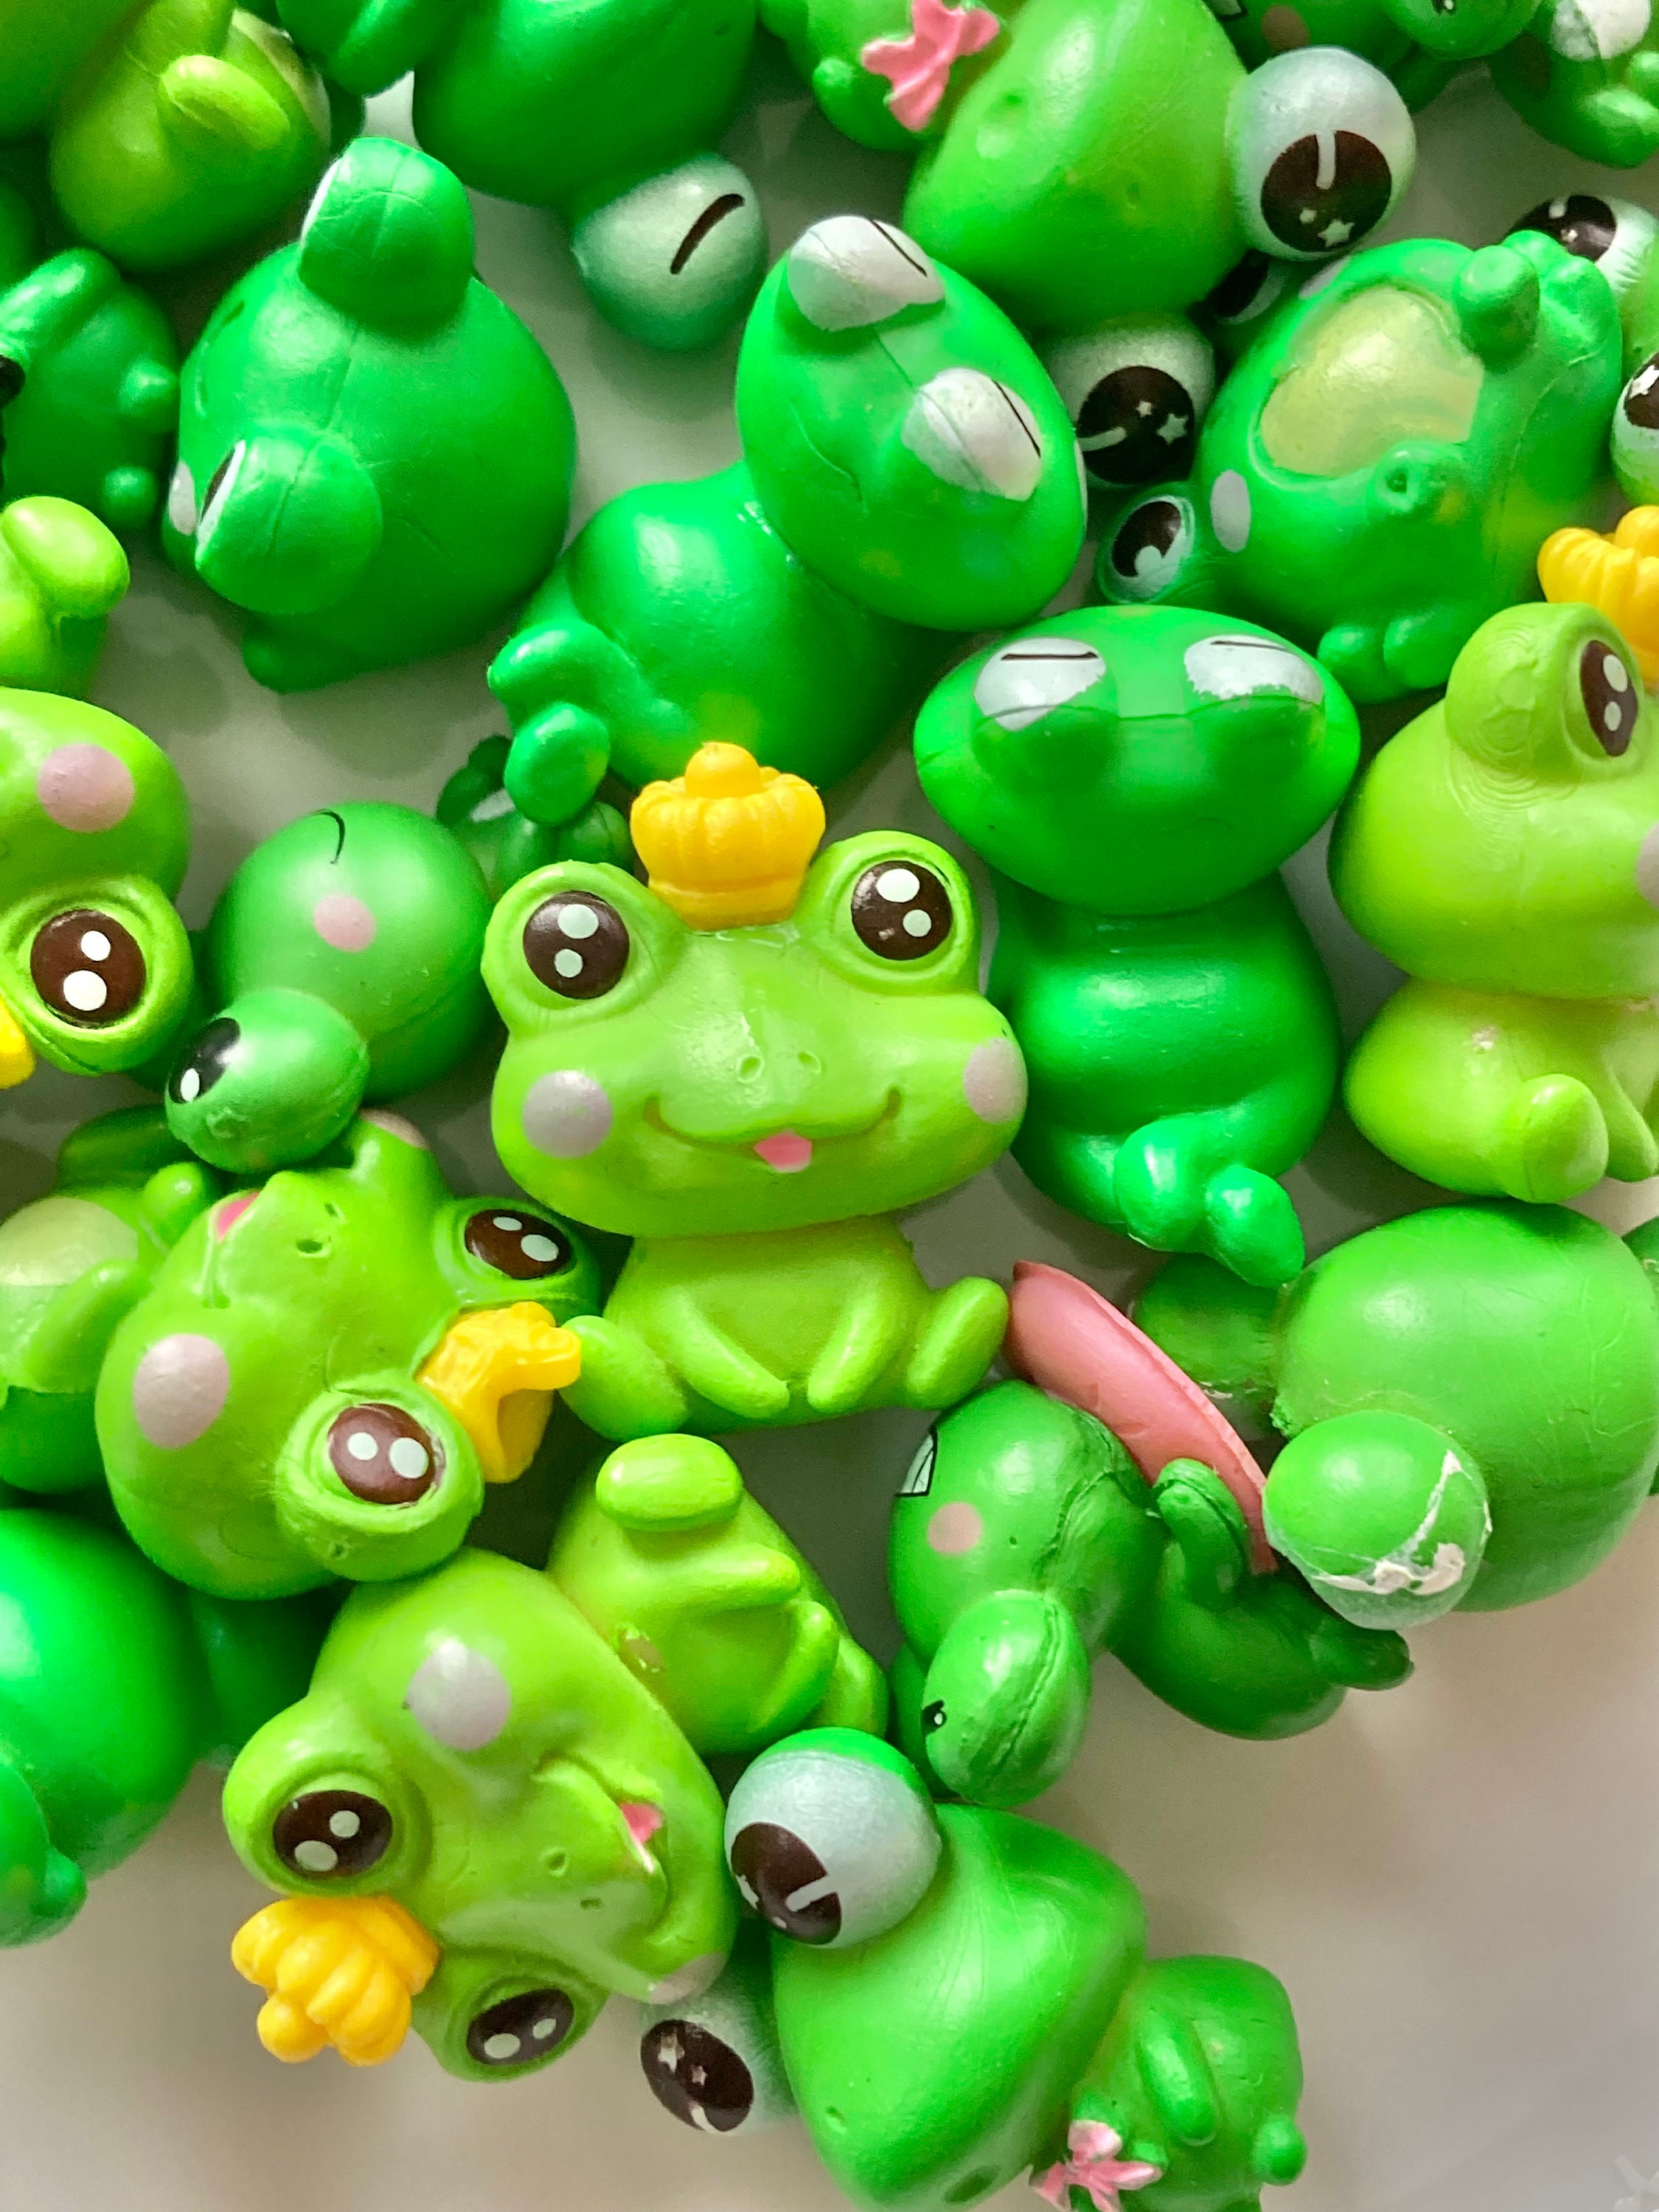 Plastic Frog Toy 